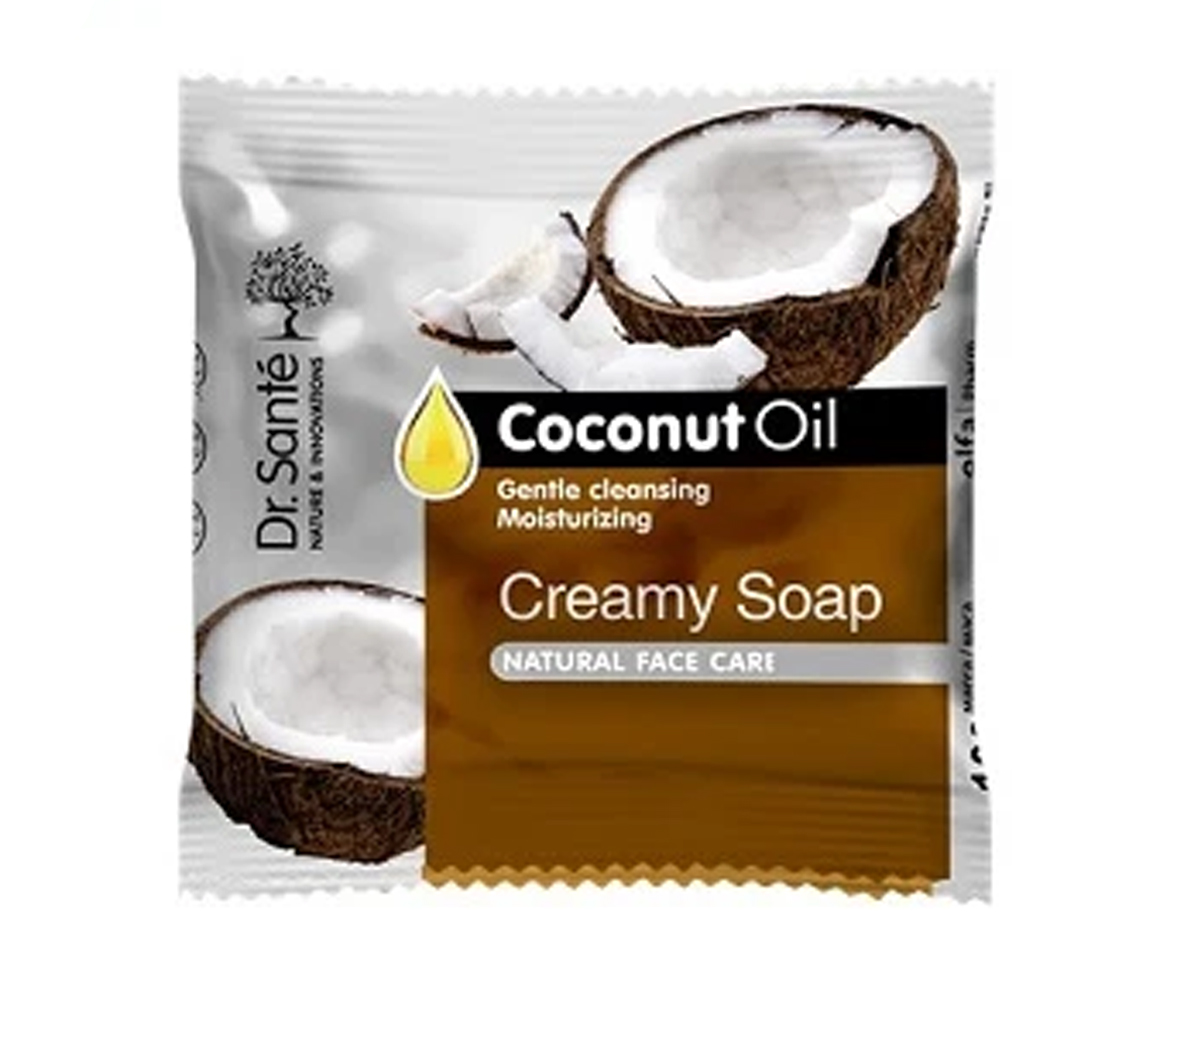 Dr. Santé kokosový olej - krémové mýdlo, 100 g